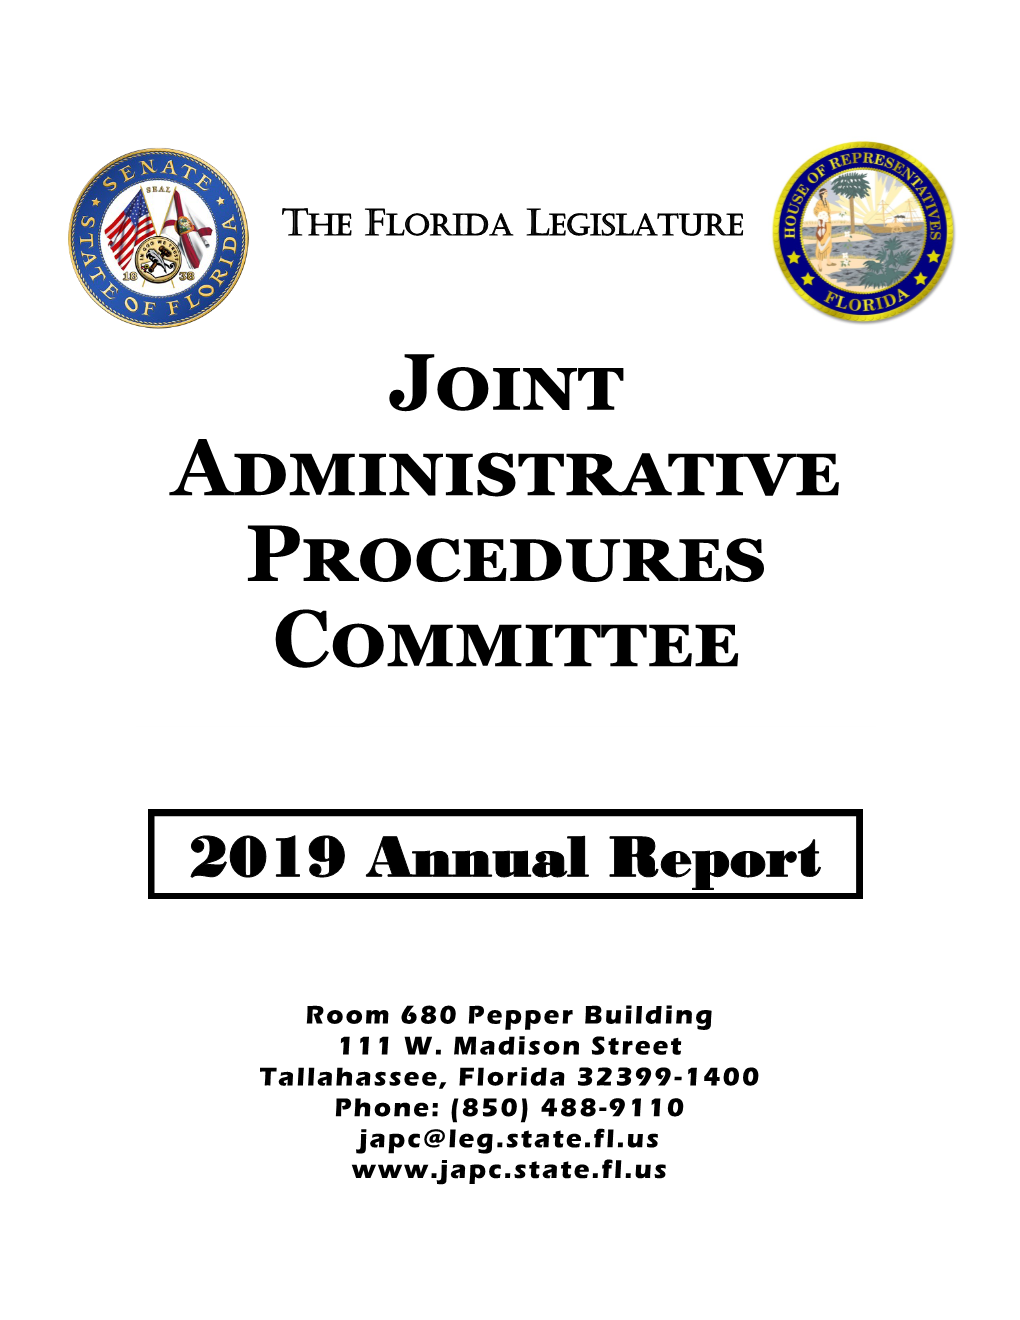 JAPC 2019 Annual Report